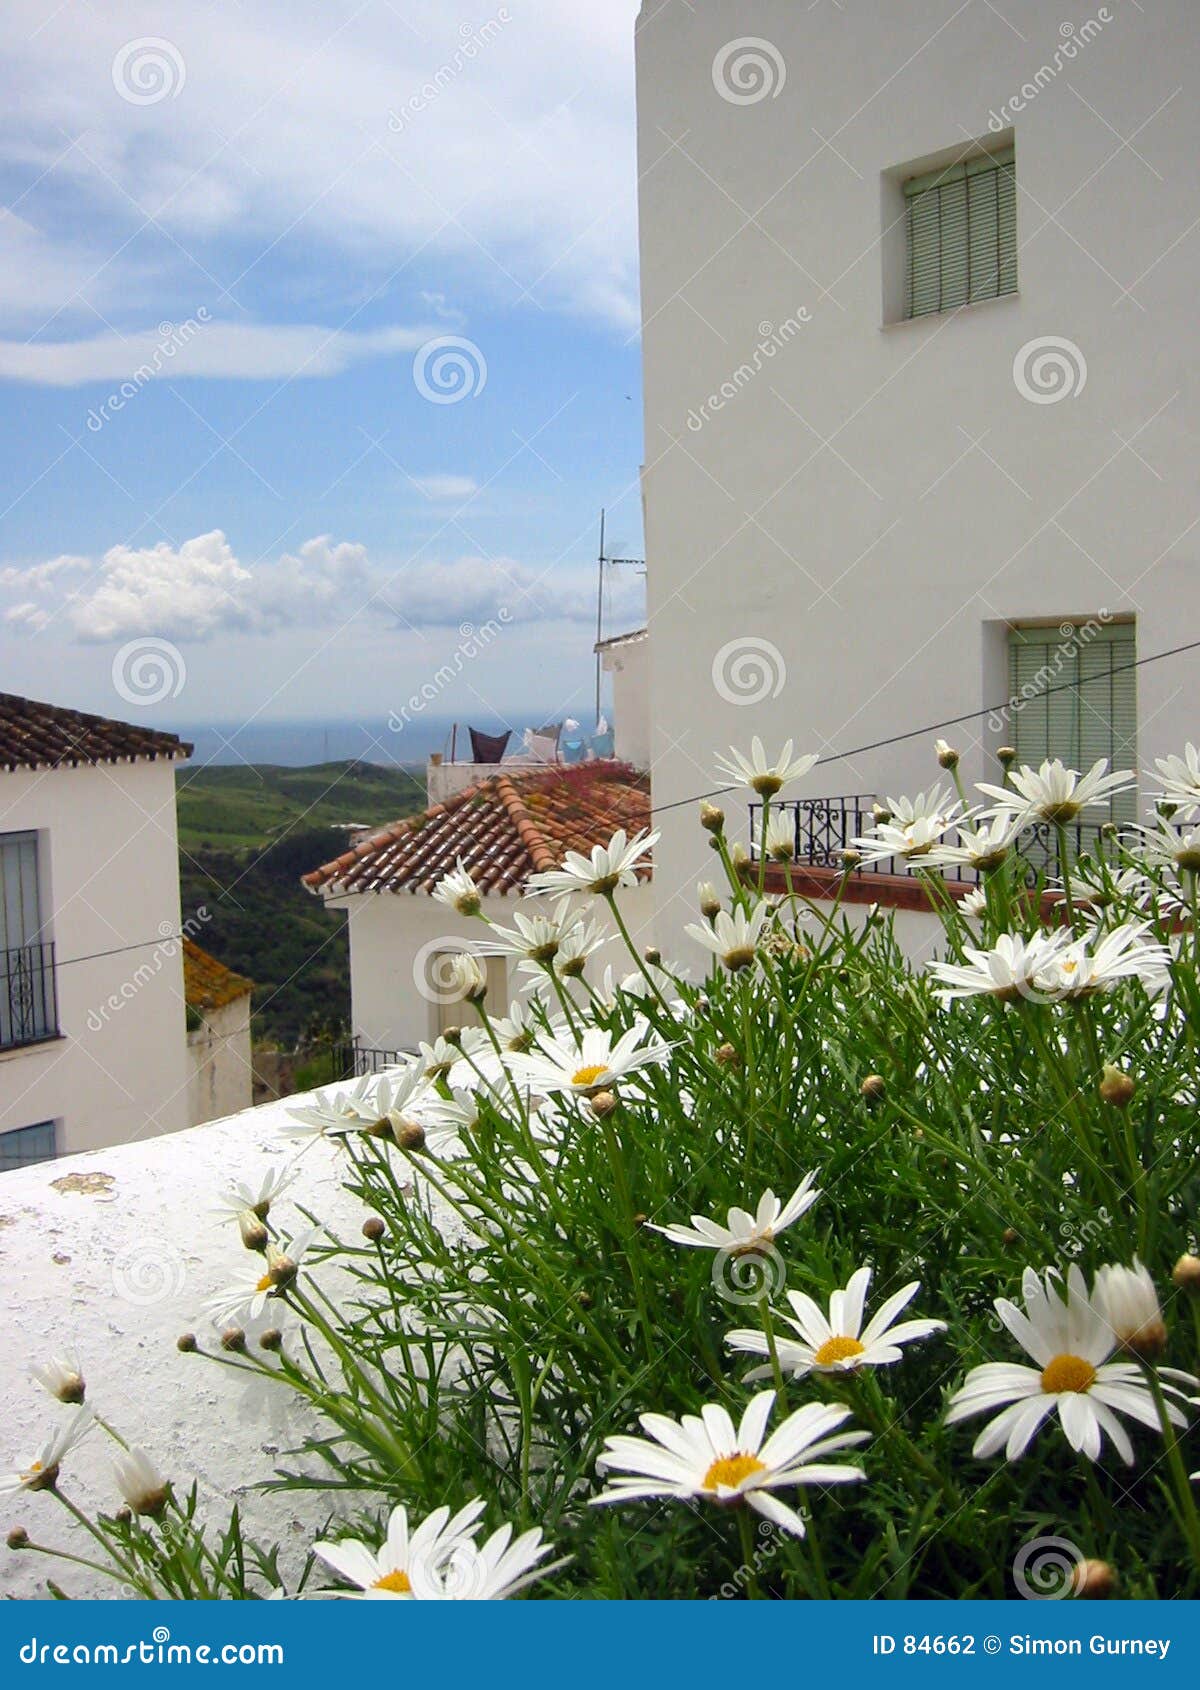 spanish flowers pueblo blanco andalucia